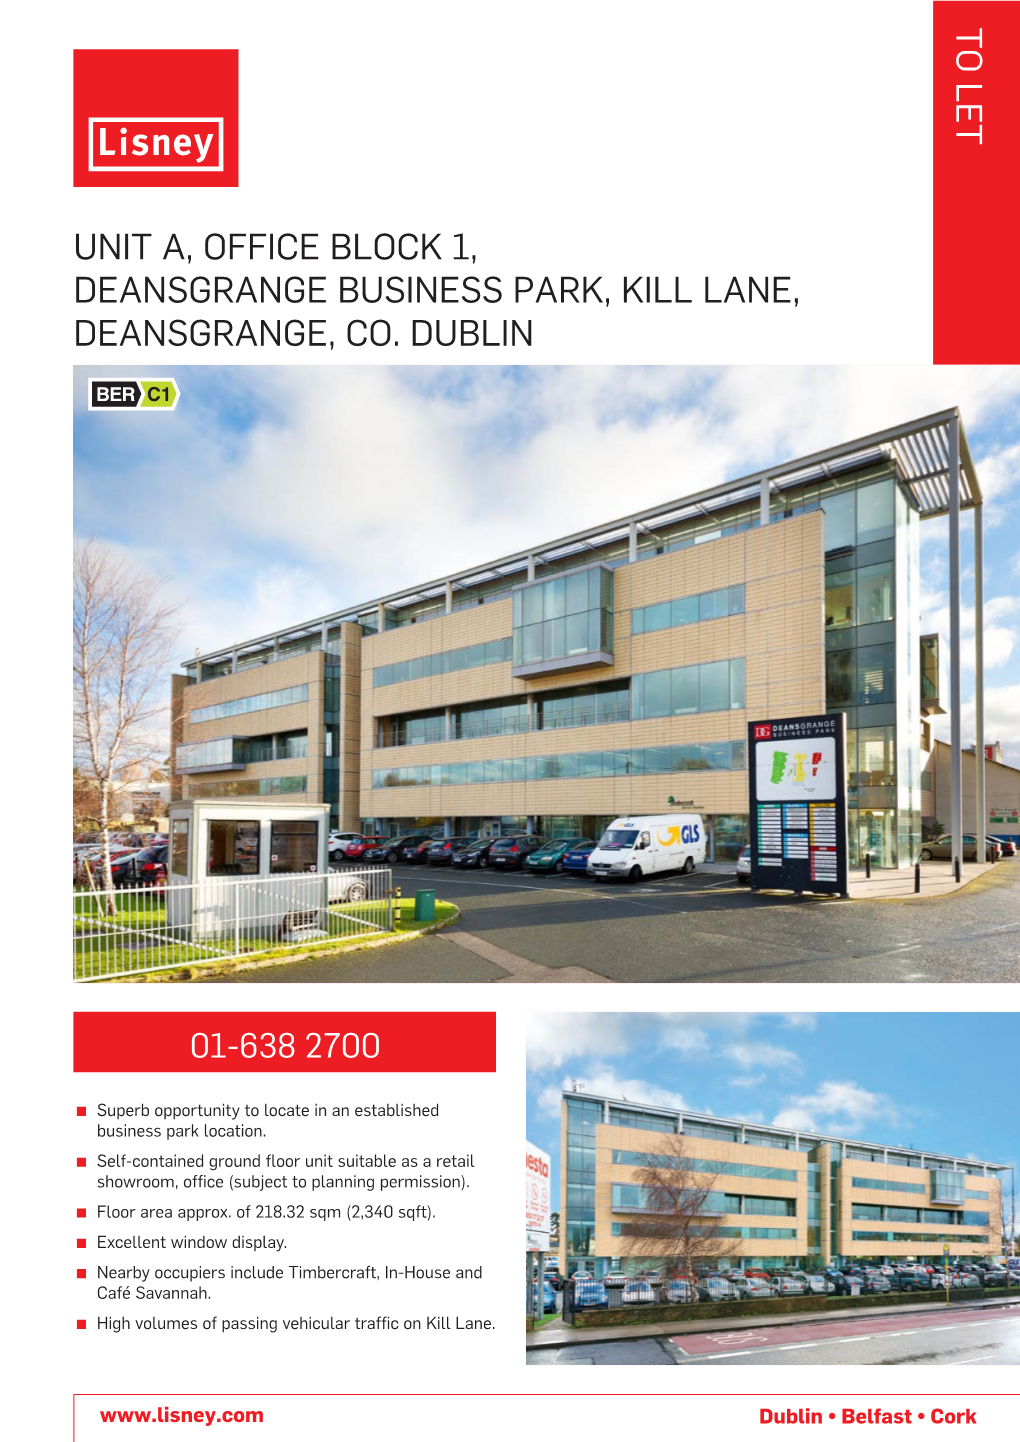 Unit A, Office Block 1, Deansgrange Business Park, Kill Lane